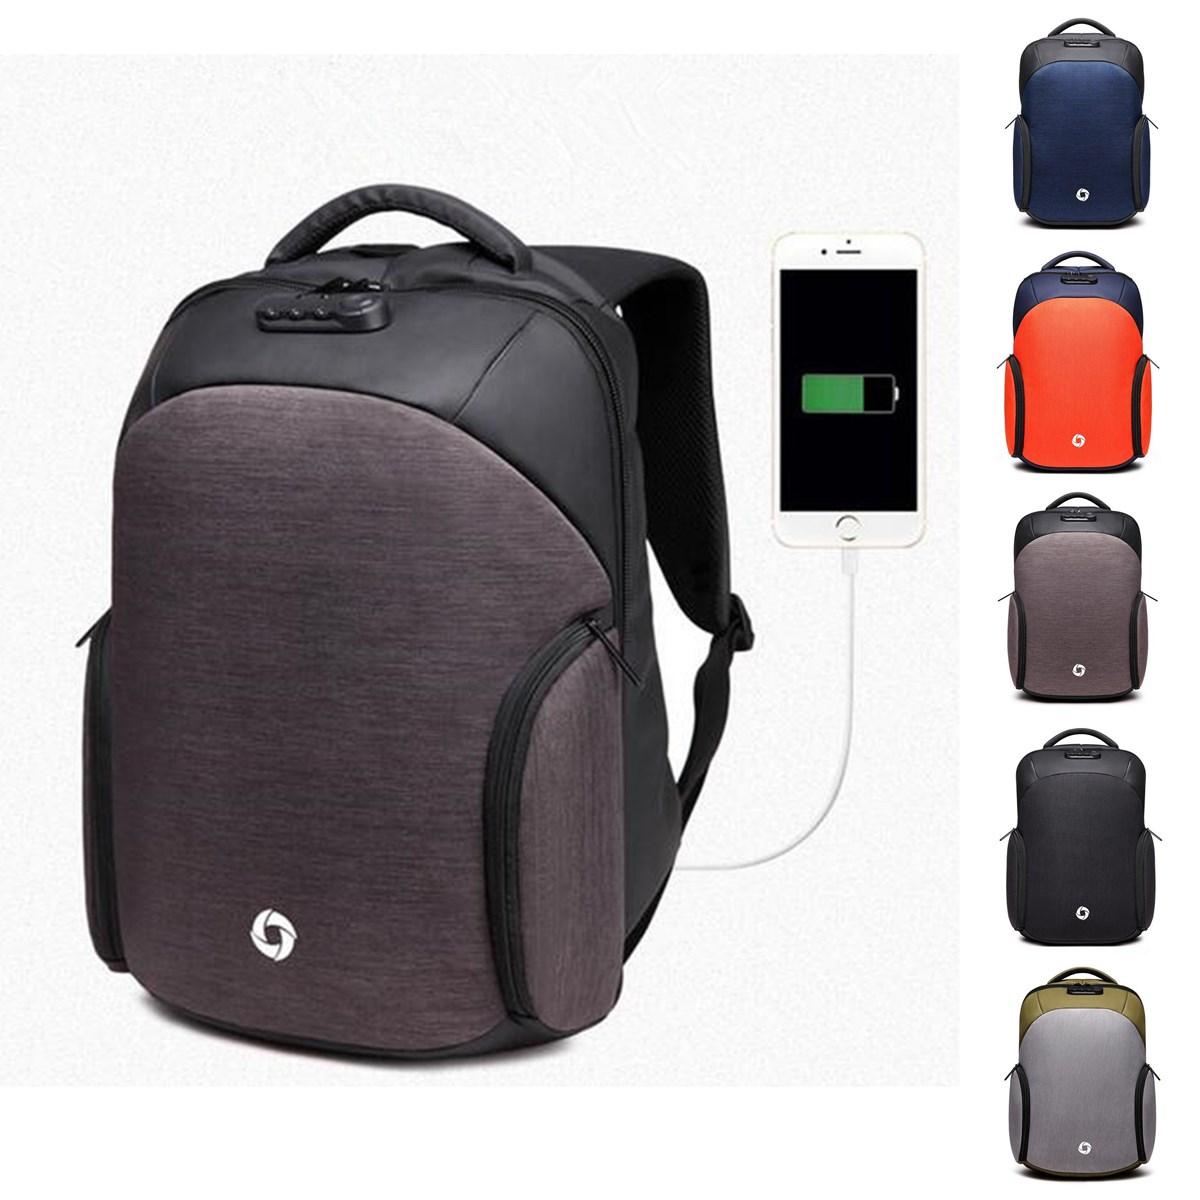  USB Şarj Anti-hırsızlık Sırt Çantası Dizüstü Mens Sırt Çantaları Outdoor Seyahat İş Çanta Okul Çantalar